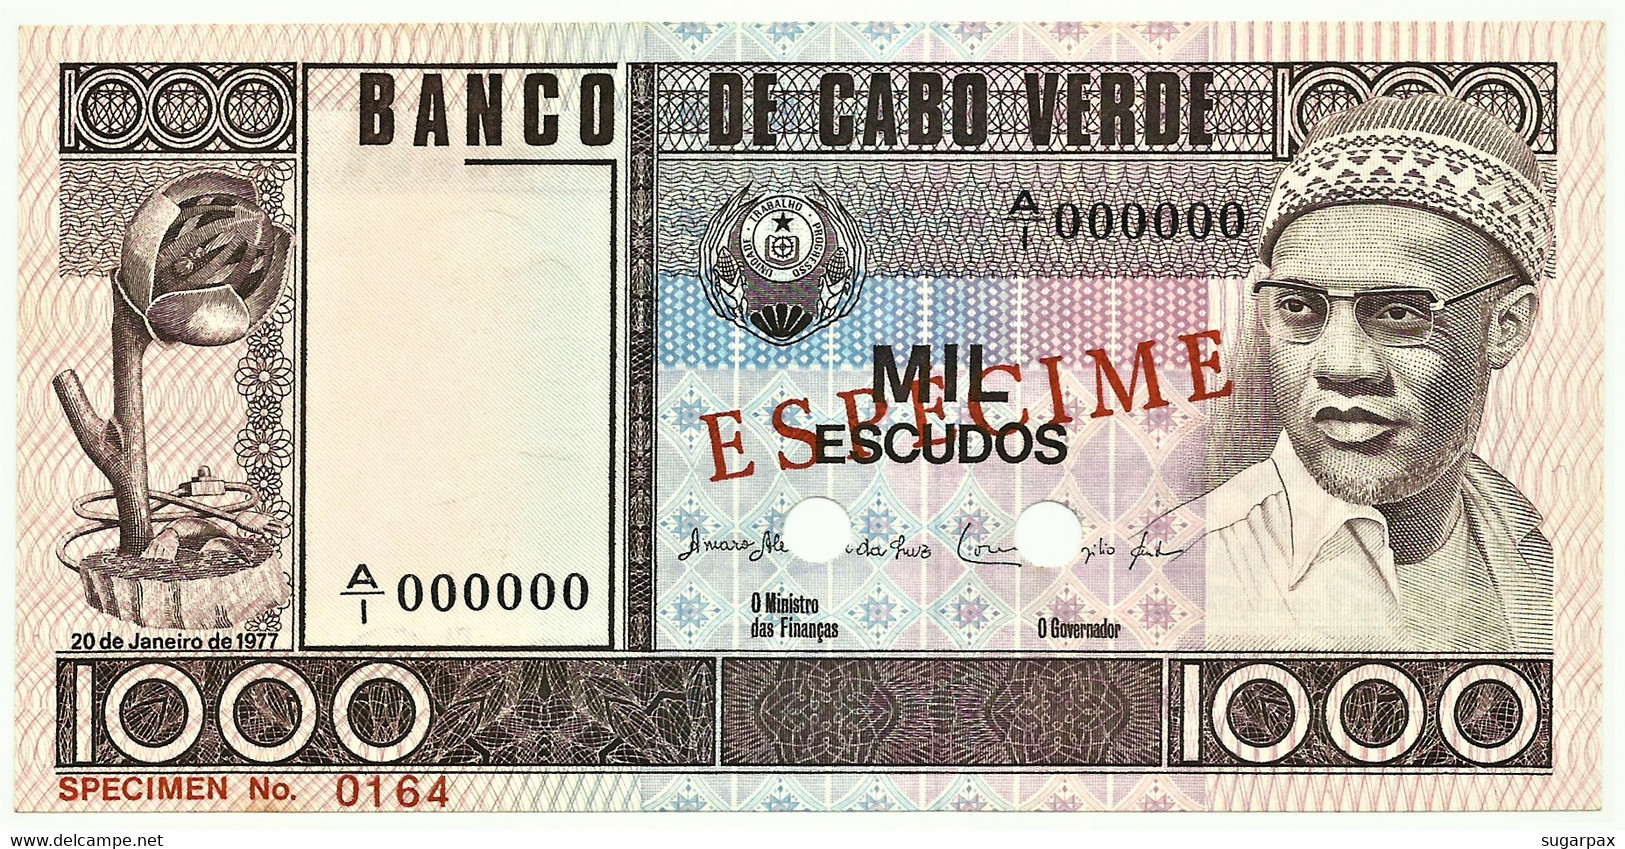 CAPE VERDE - 1000 ESCUDOS - 20.01.1977 - Pick 56.s1 - Unc. - ESPÉCIME In RED - 1.000 - Capo Verde